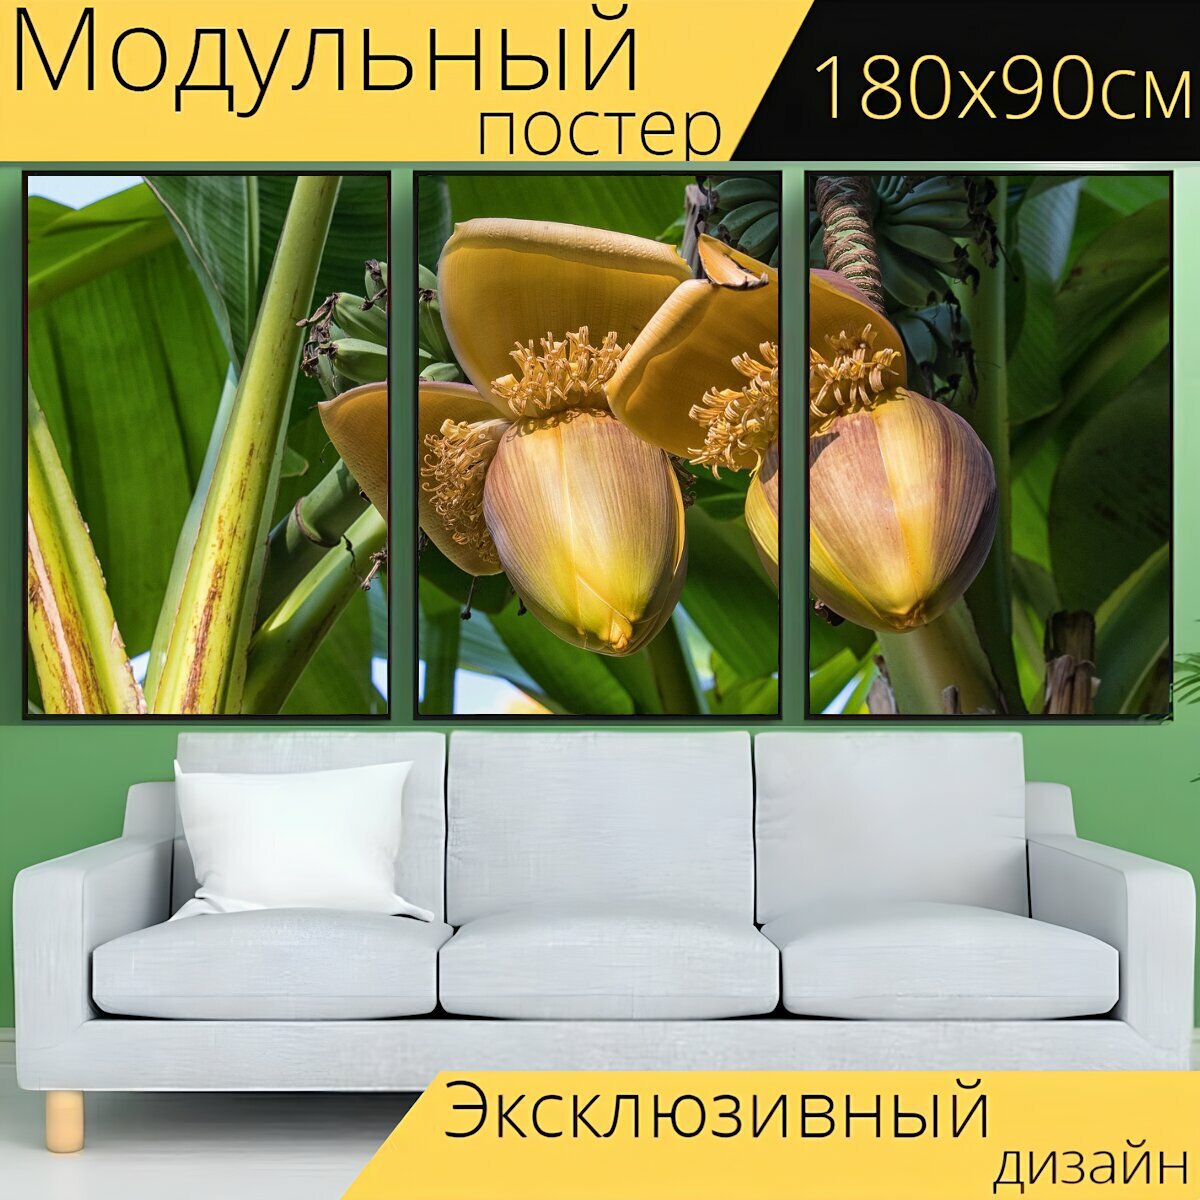 Модульный постер "Цветок банана, банановое дерево, банановое растение" 180 x 90 см. для интерьера